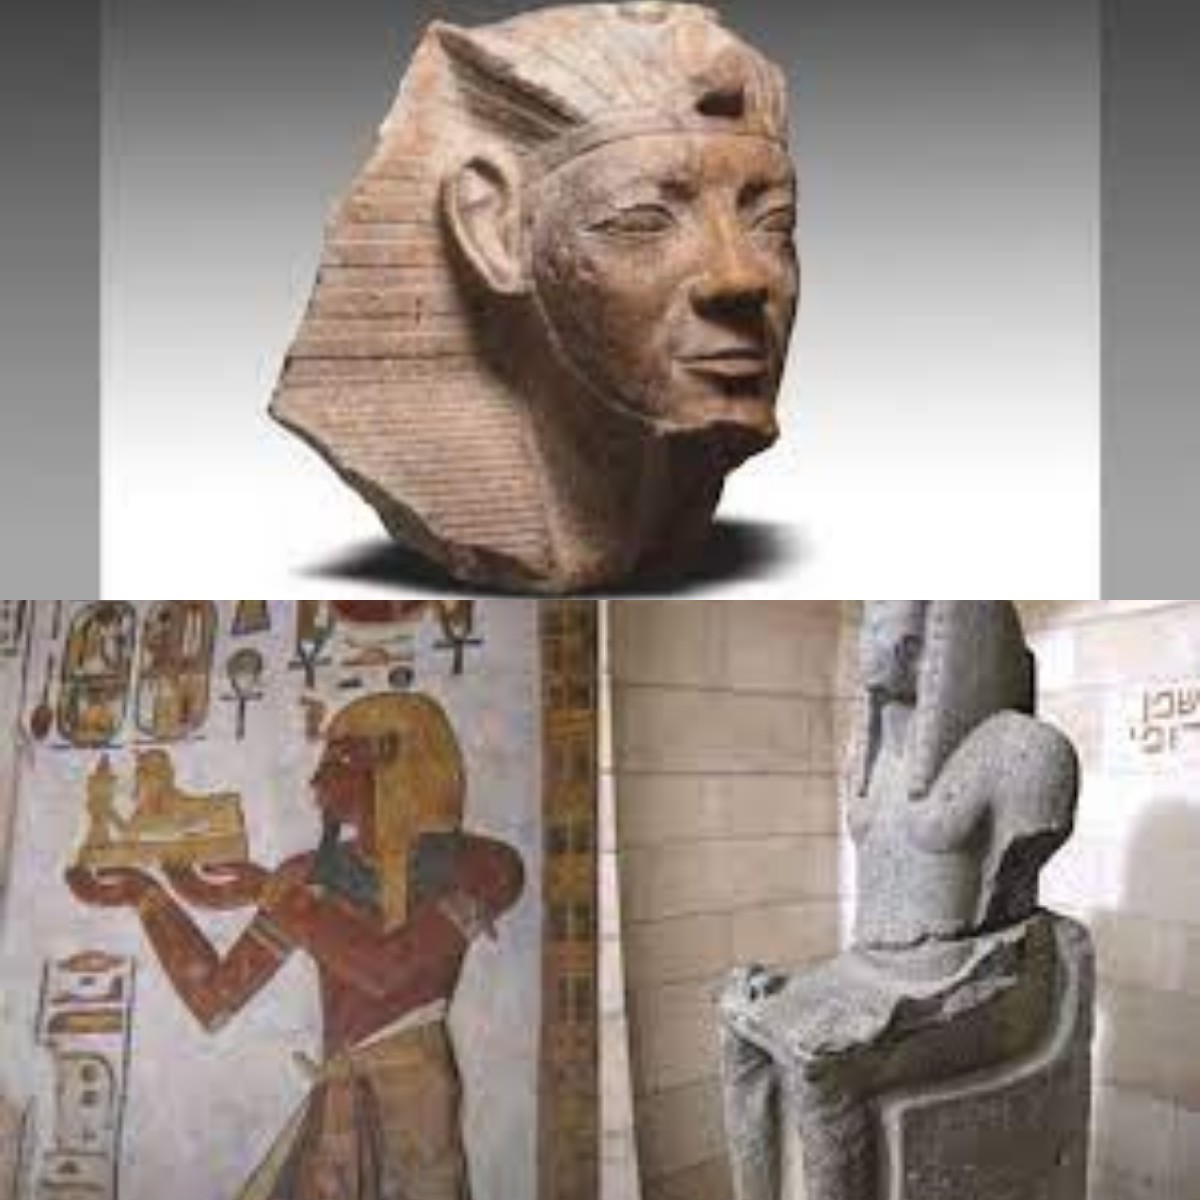 Berhasil Tmeukan Bagian Atas Patung Raja Ramses II, Penemuan ini Ungkap Pusat Keagamaan Kota Ashmunin